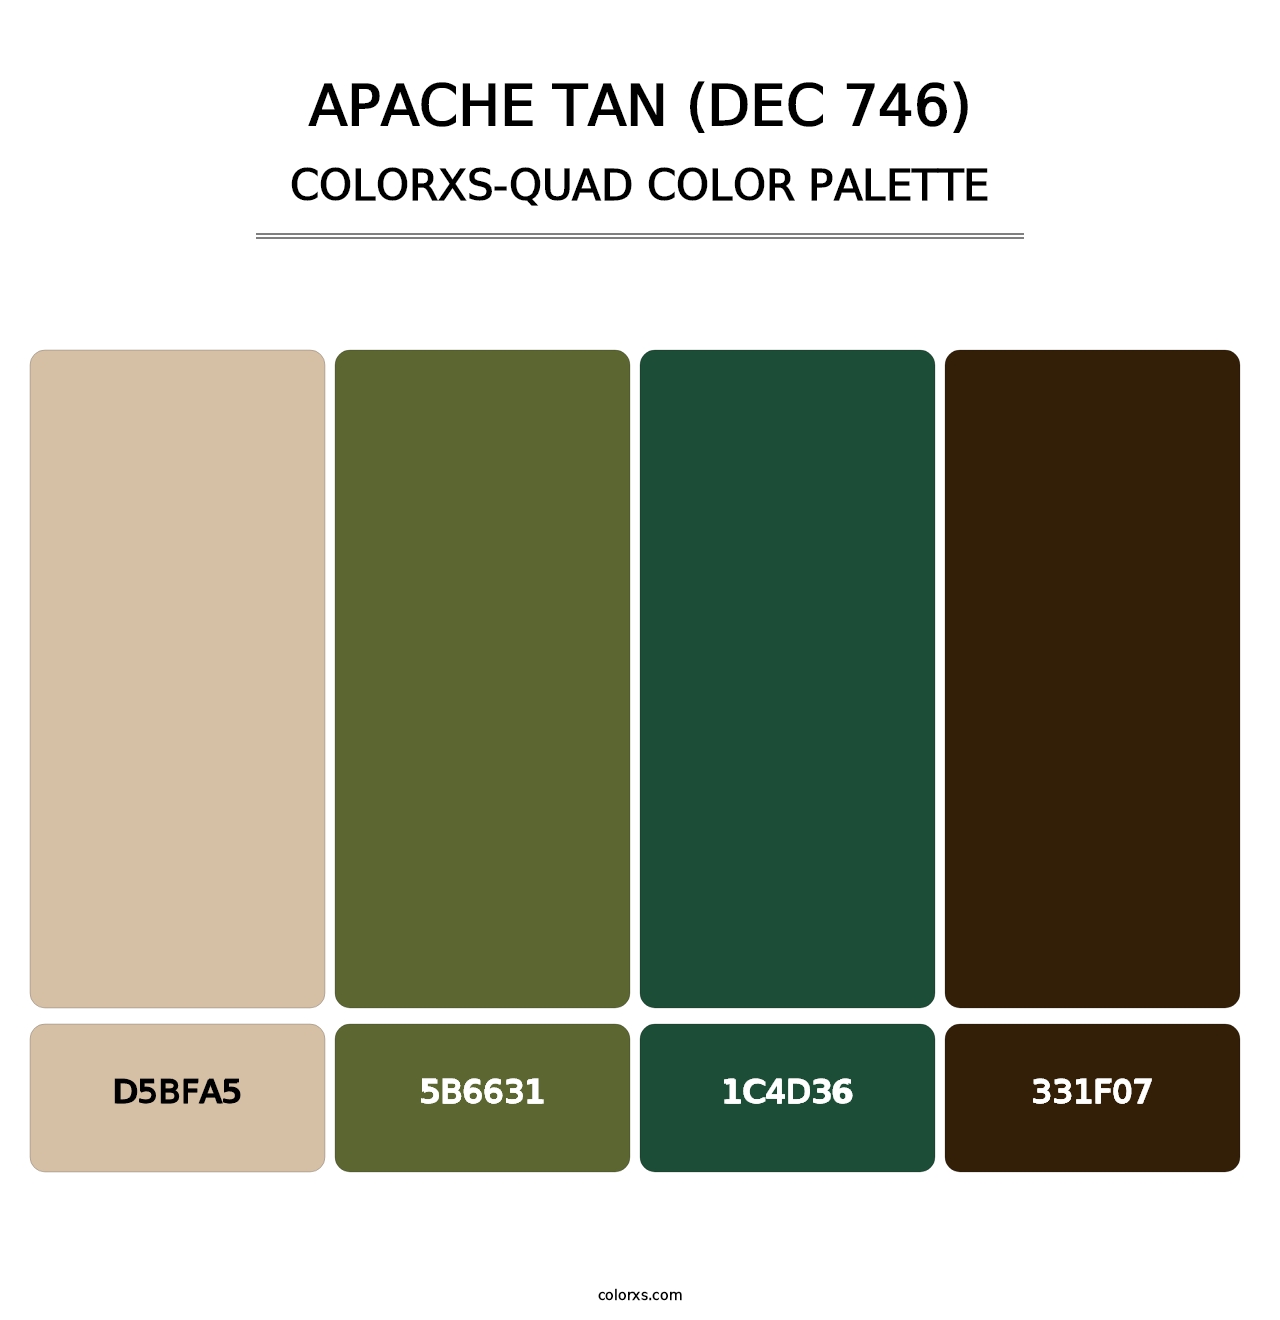 Apache Tan (DEC 746) - Colorxs Quad Palette